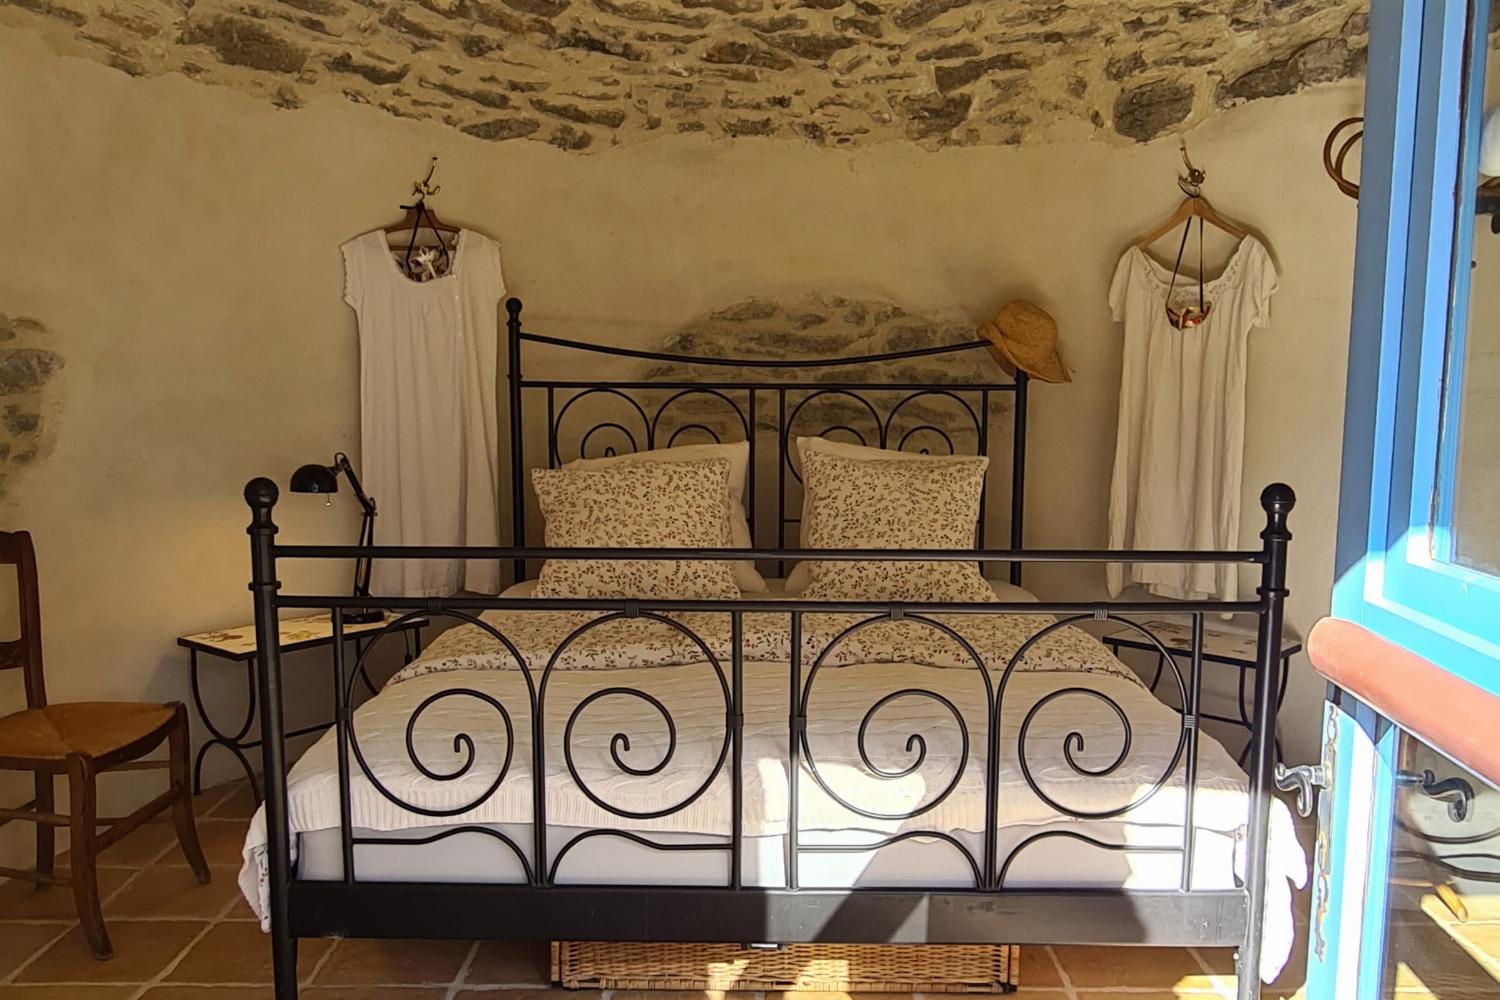 Chambre dans la tour| Hébergement de vacances dans le sud de la France